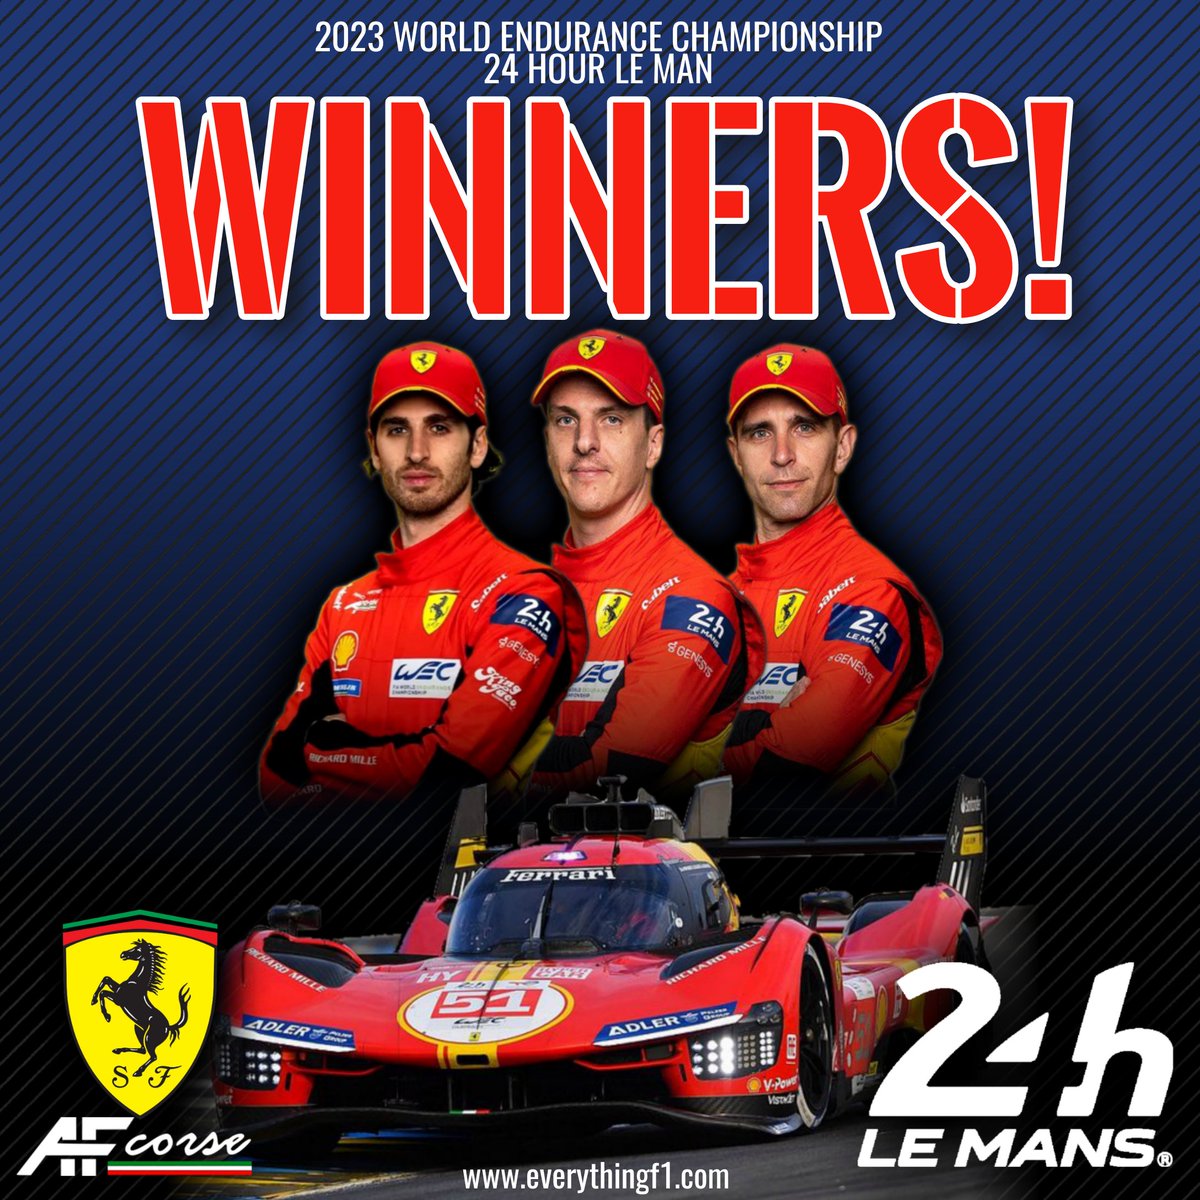 @Ferrari WIN THE LE MANS 24HOUR RACE!!!

CONGRATULATIONS TEAM!

#Lemans24 #lemans #lemans24hour #Ferrari @ScuderiaFerrari